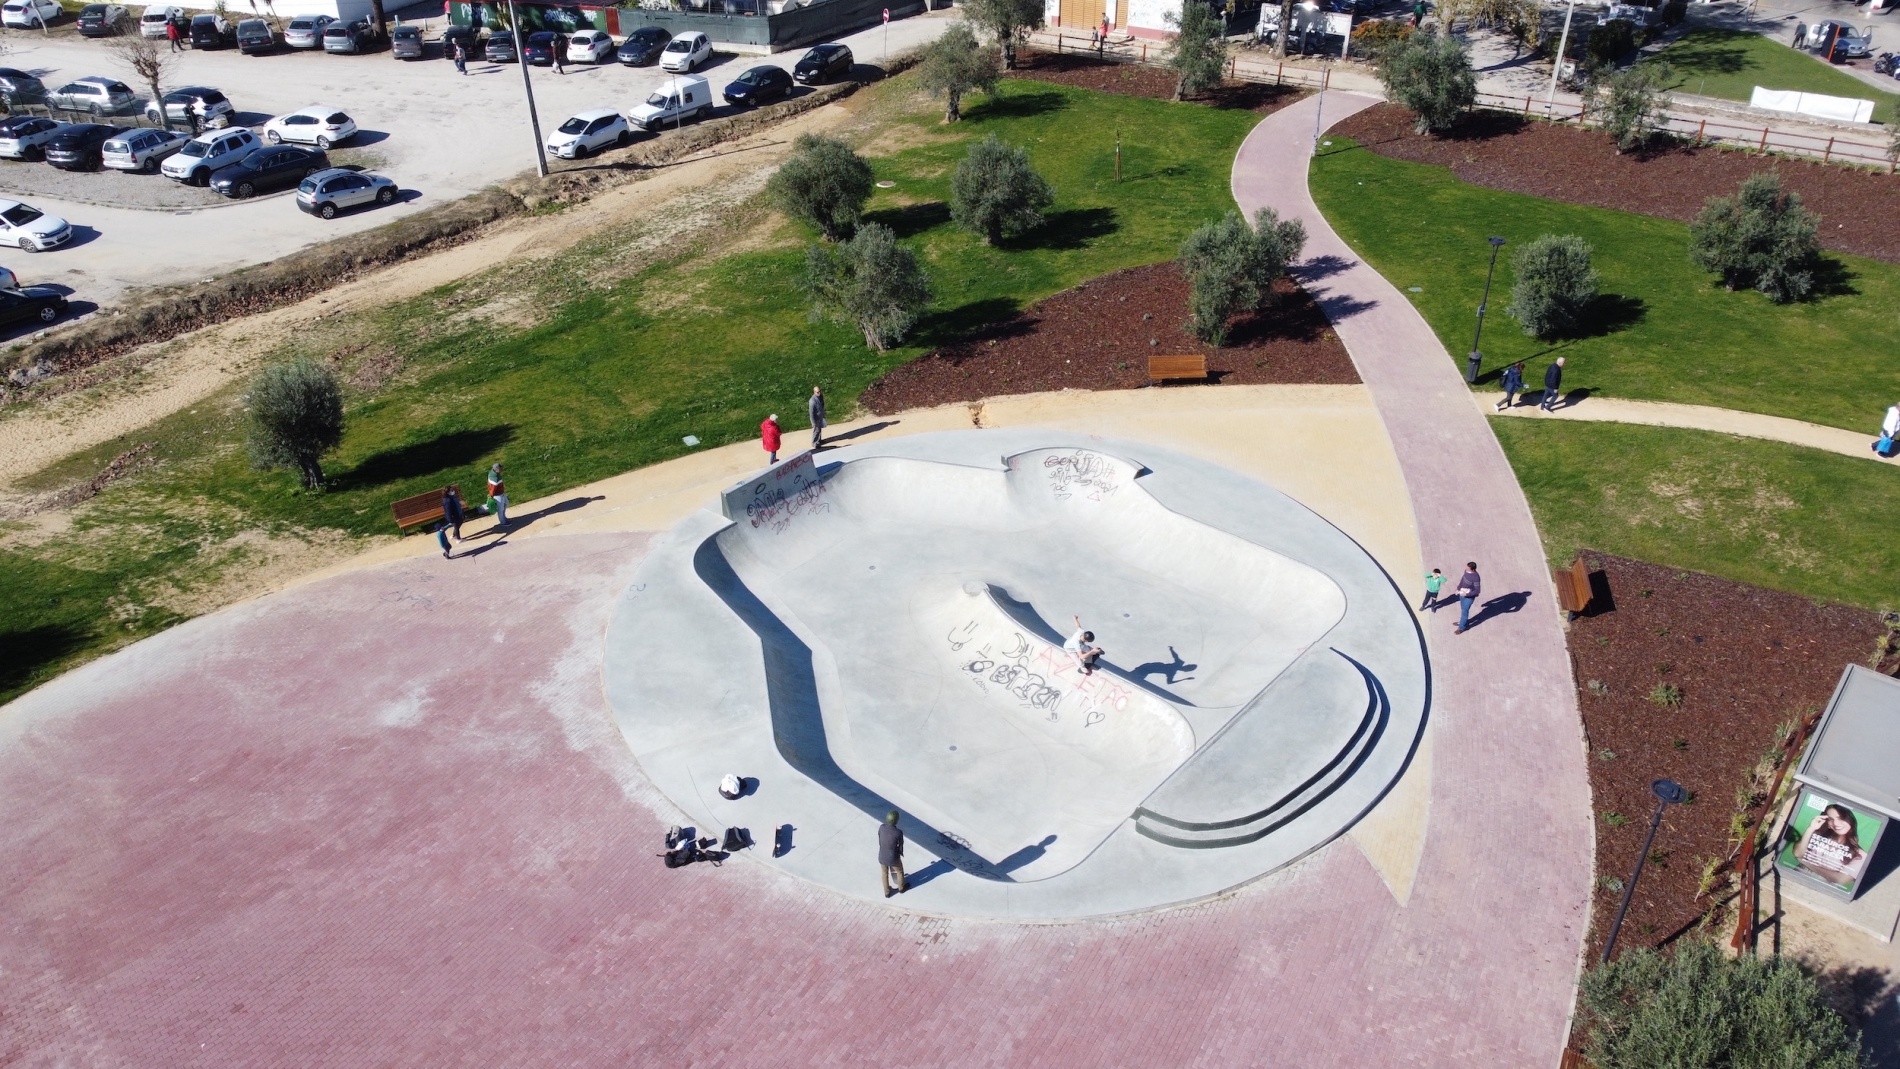 Azeitão skatepark